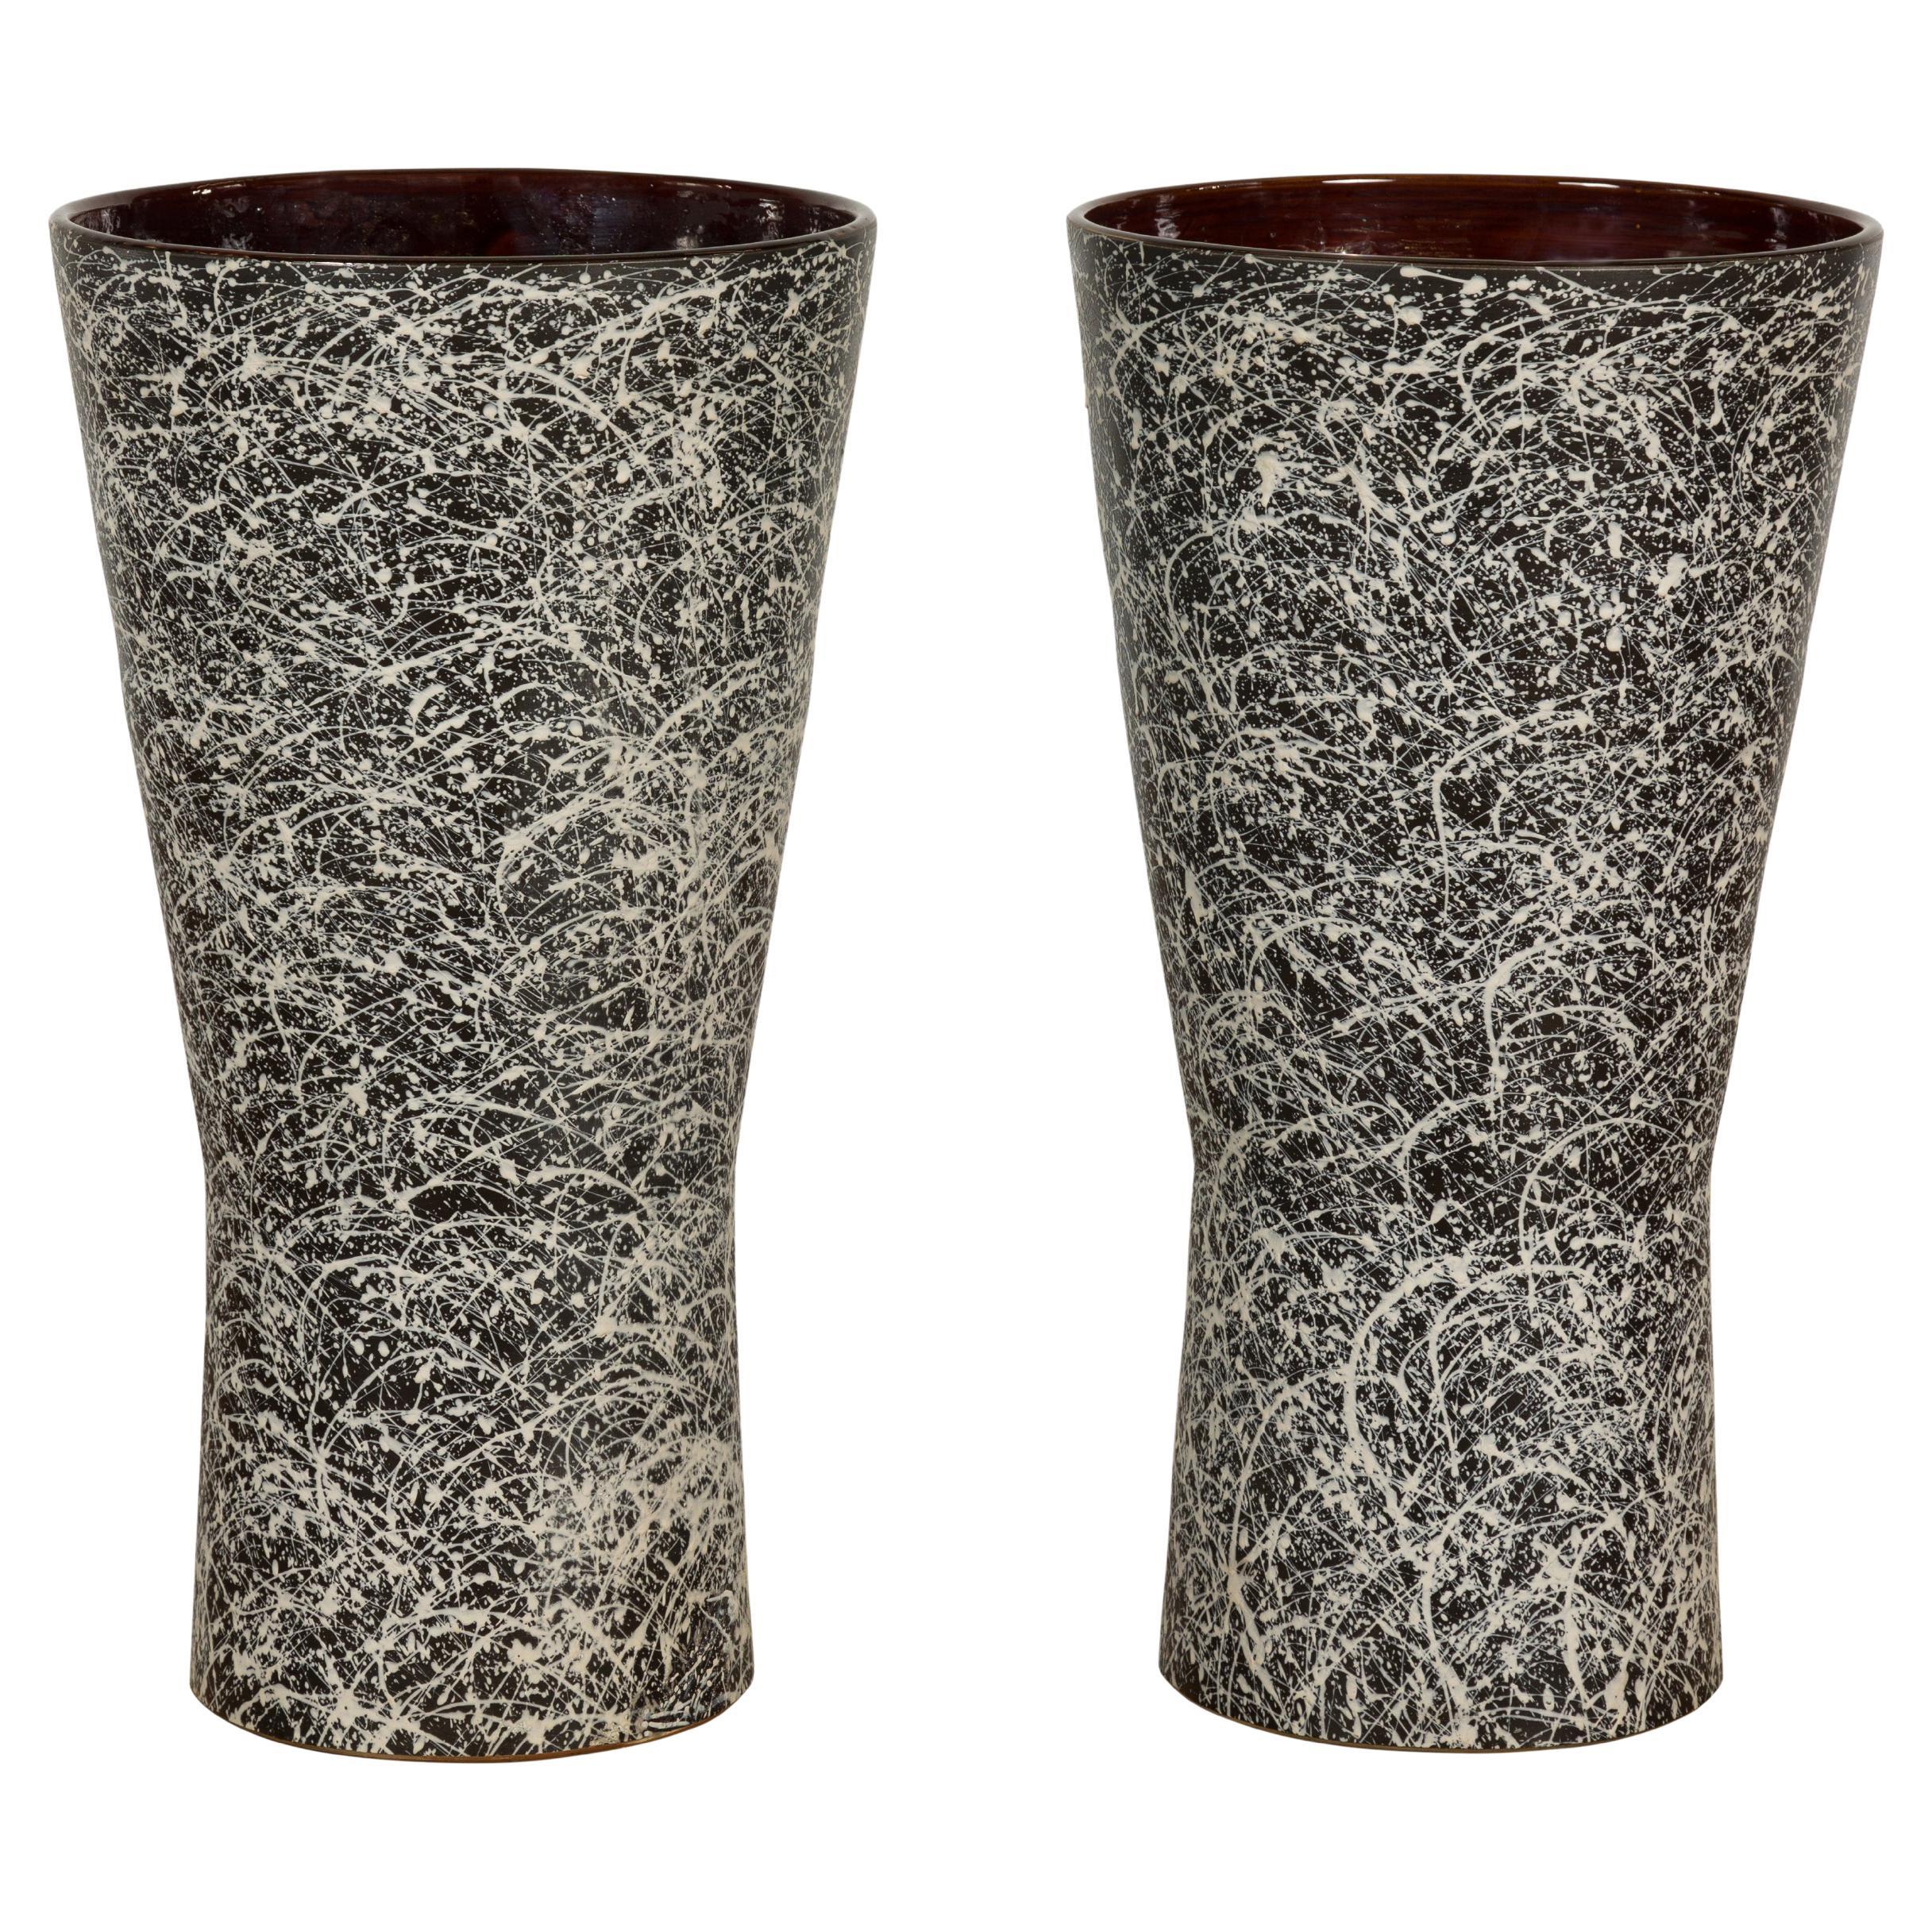 Pair of Textured Black & White Spattered Ceramic Vases For Sale